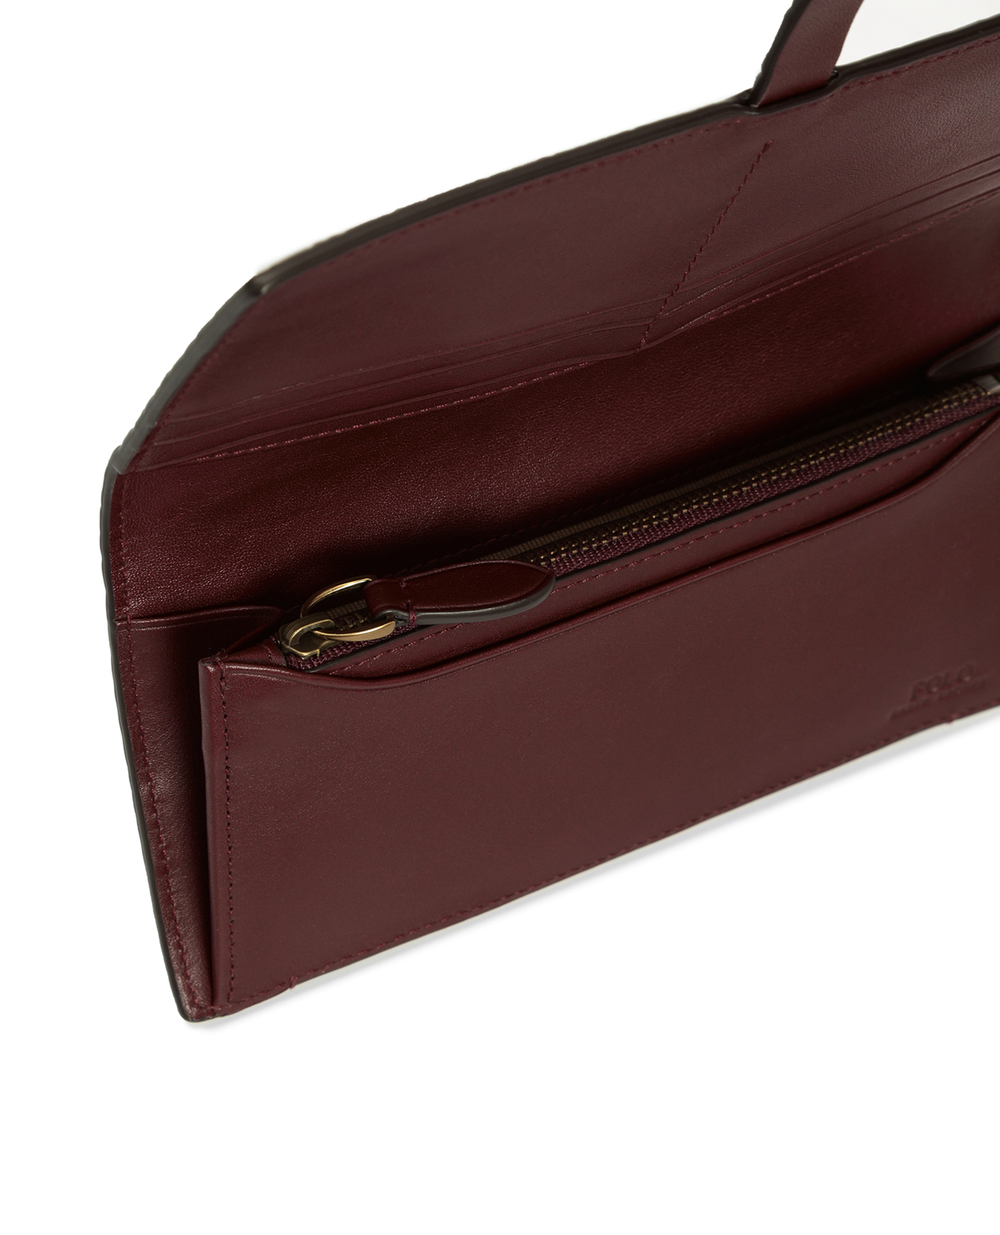 Кожаный кошелек Polo Ralph Lauren 427839560002, бордовый цвет • Купить в интернет-магазине Kameron